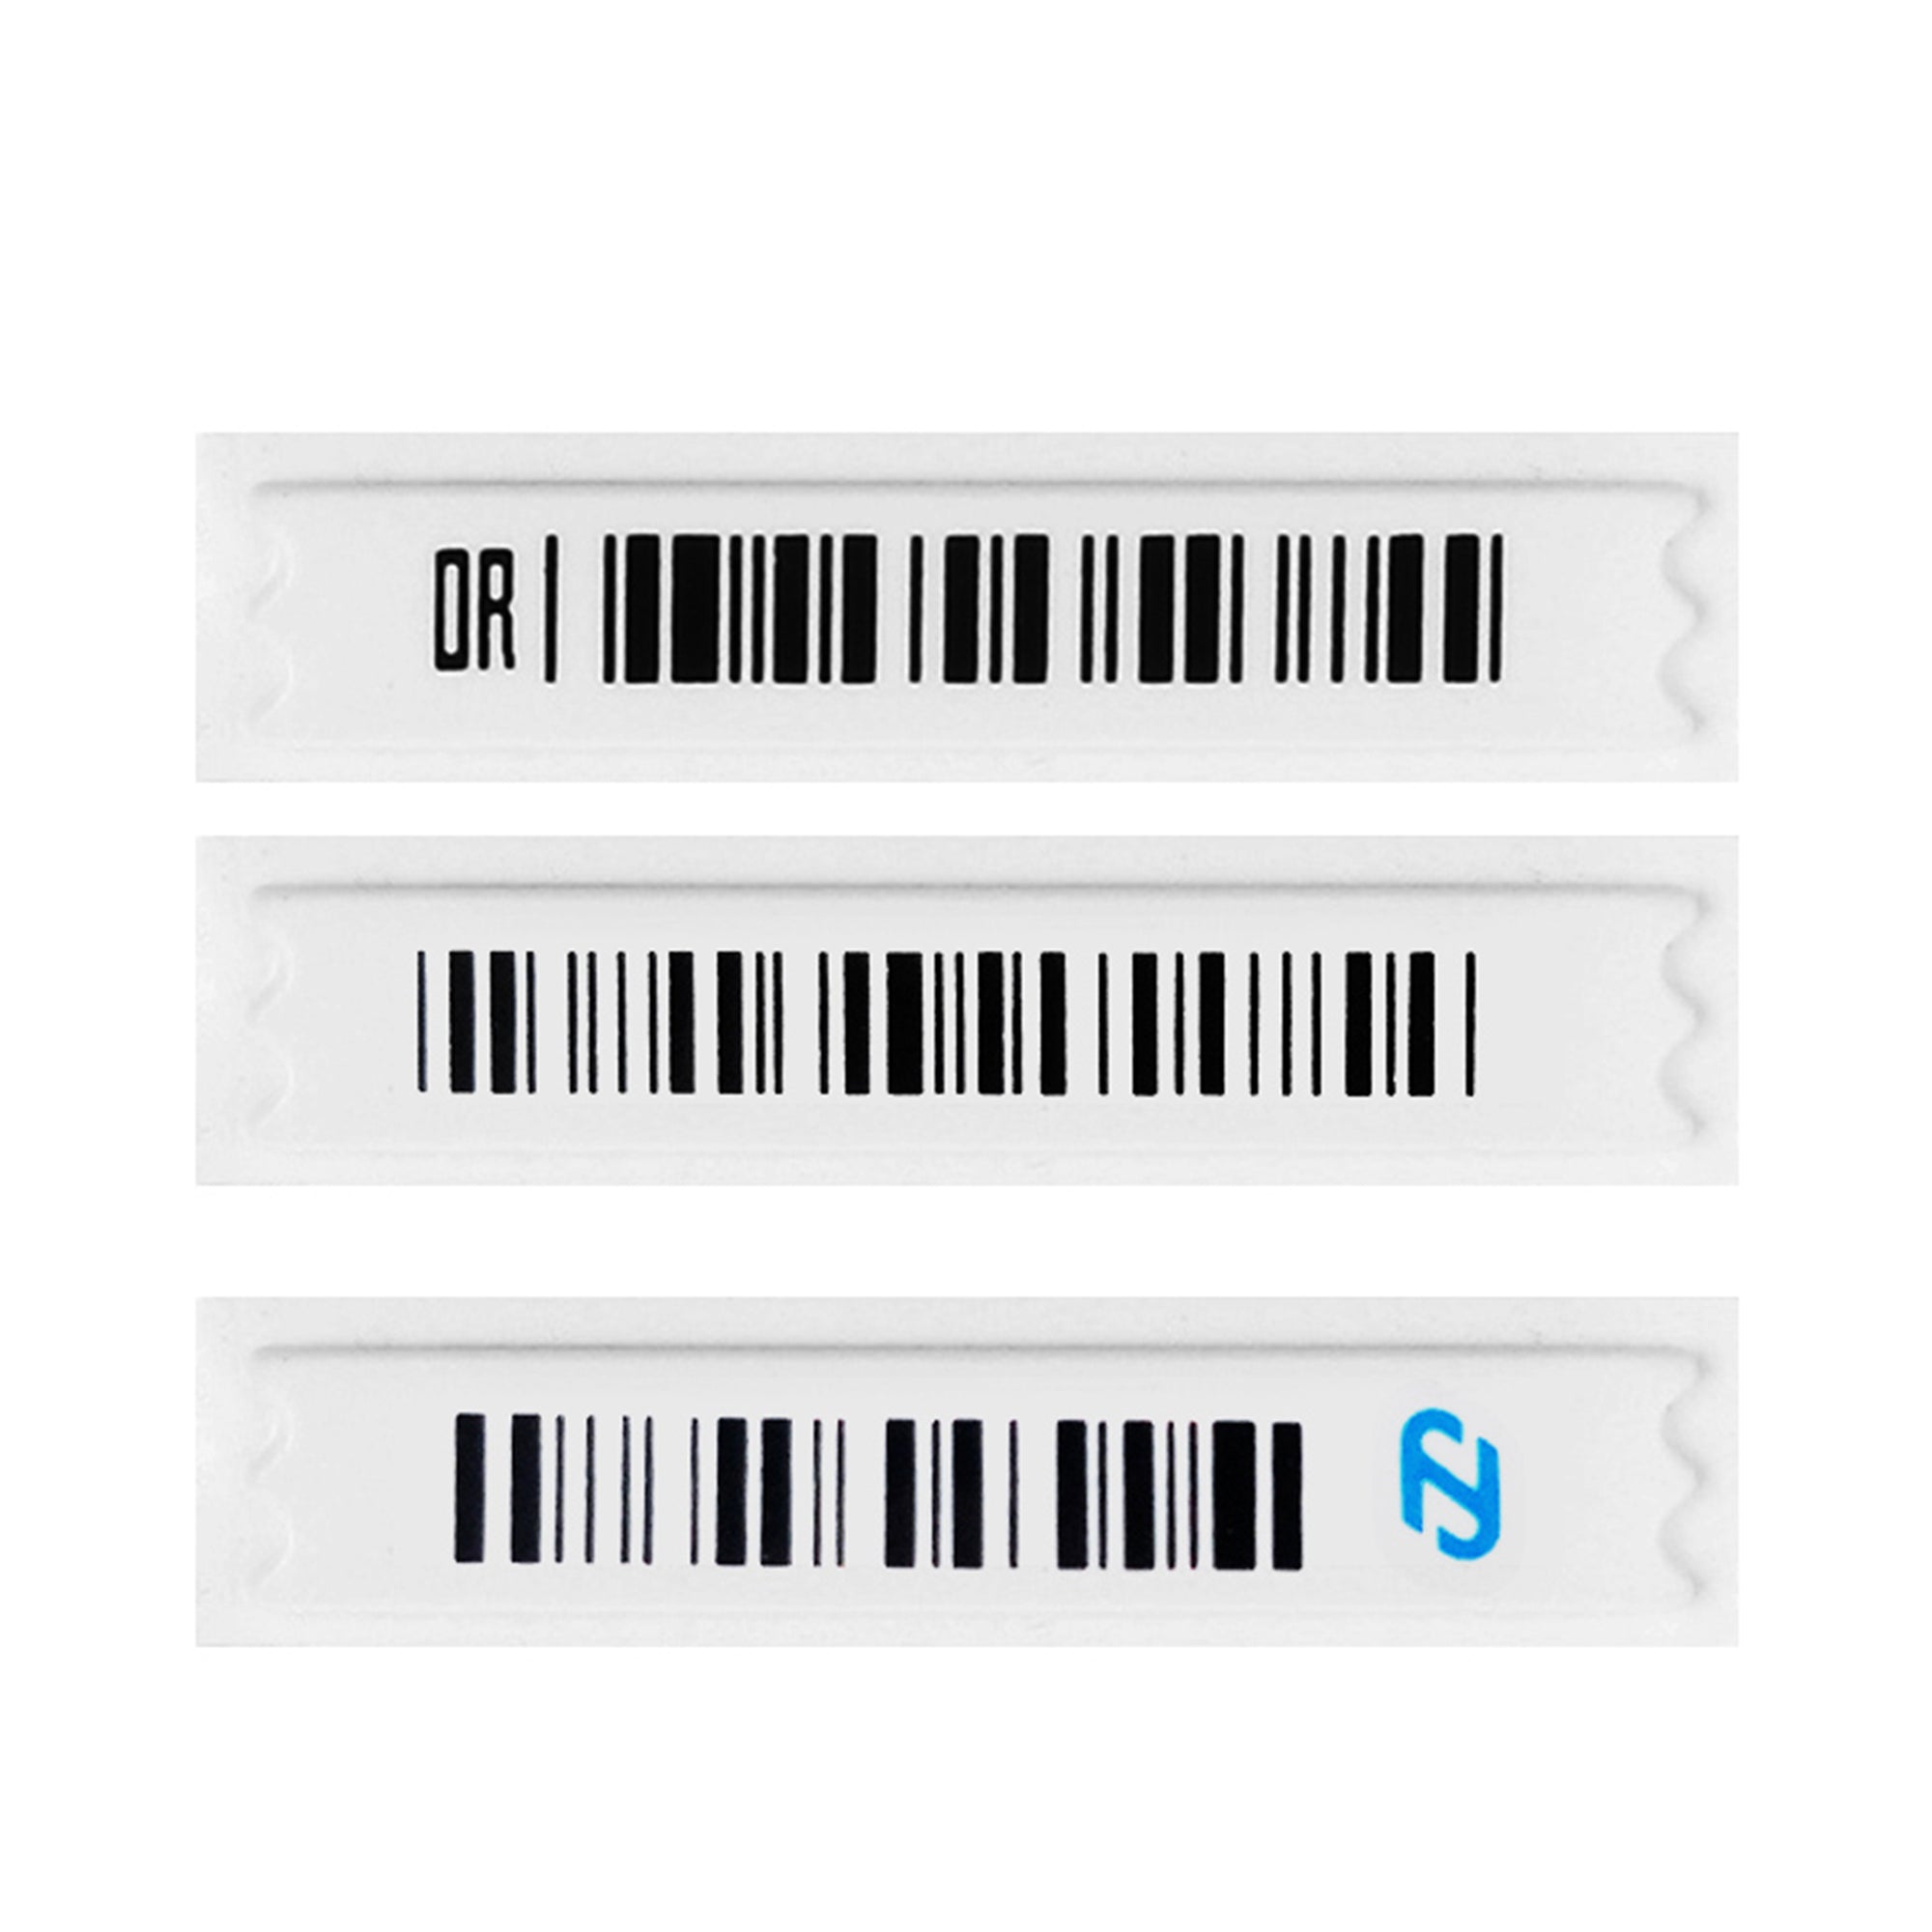 Supermarket 58kHz Security Alarm AM Labels (5000 PCS)